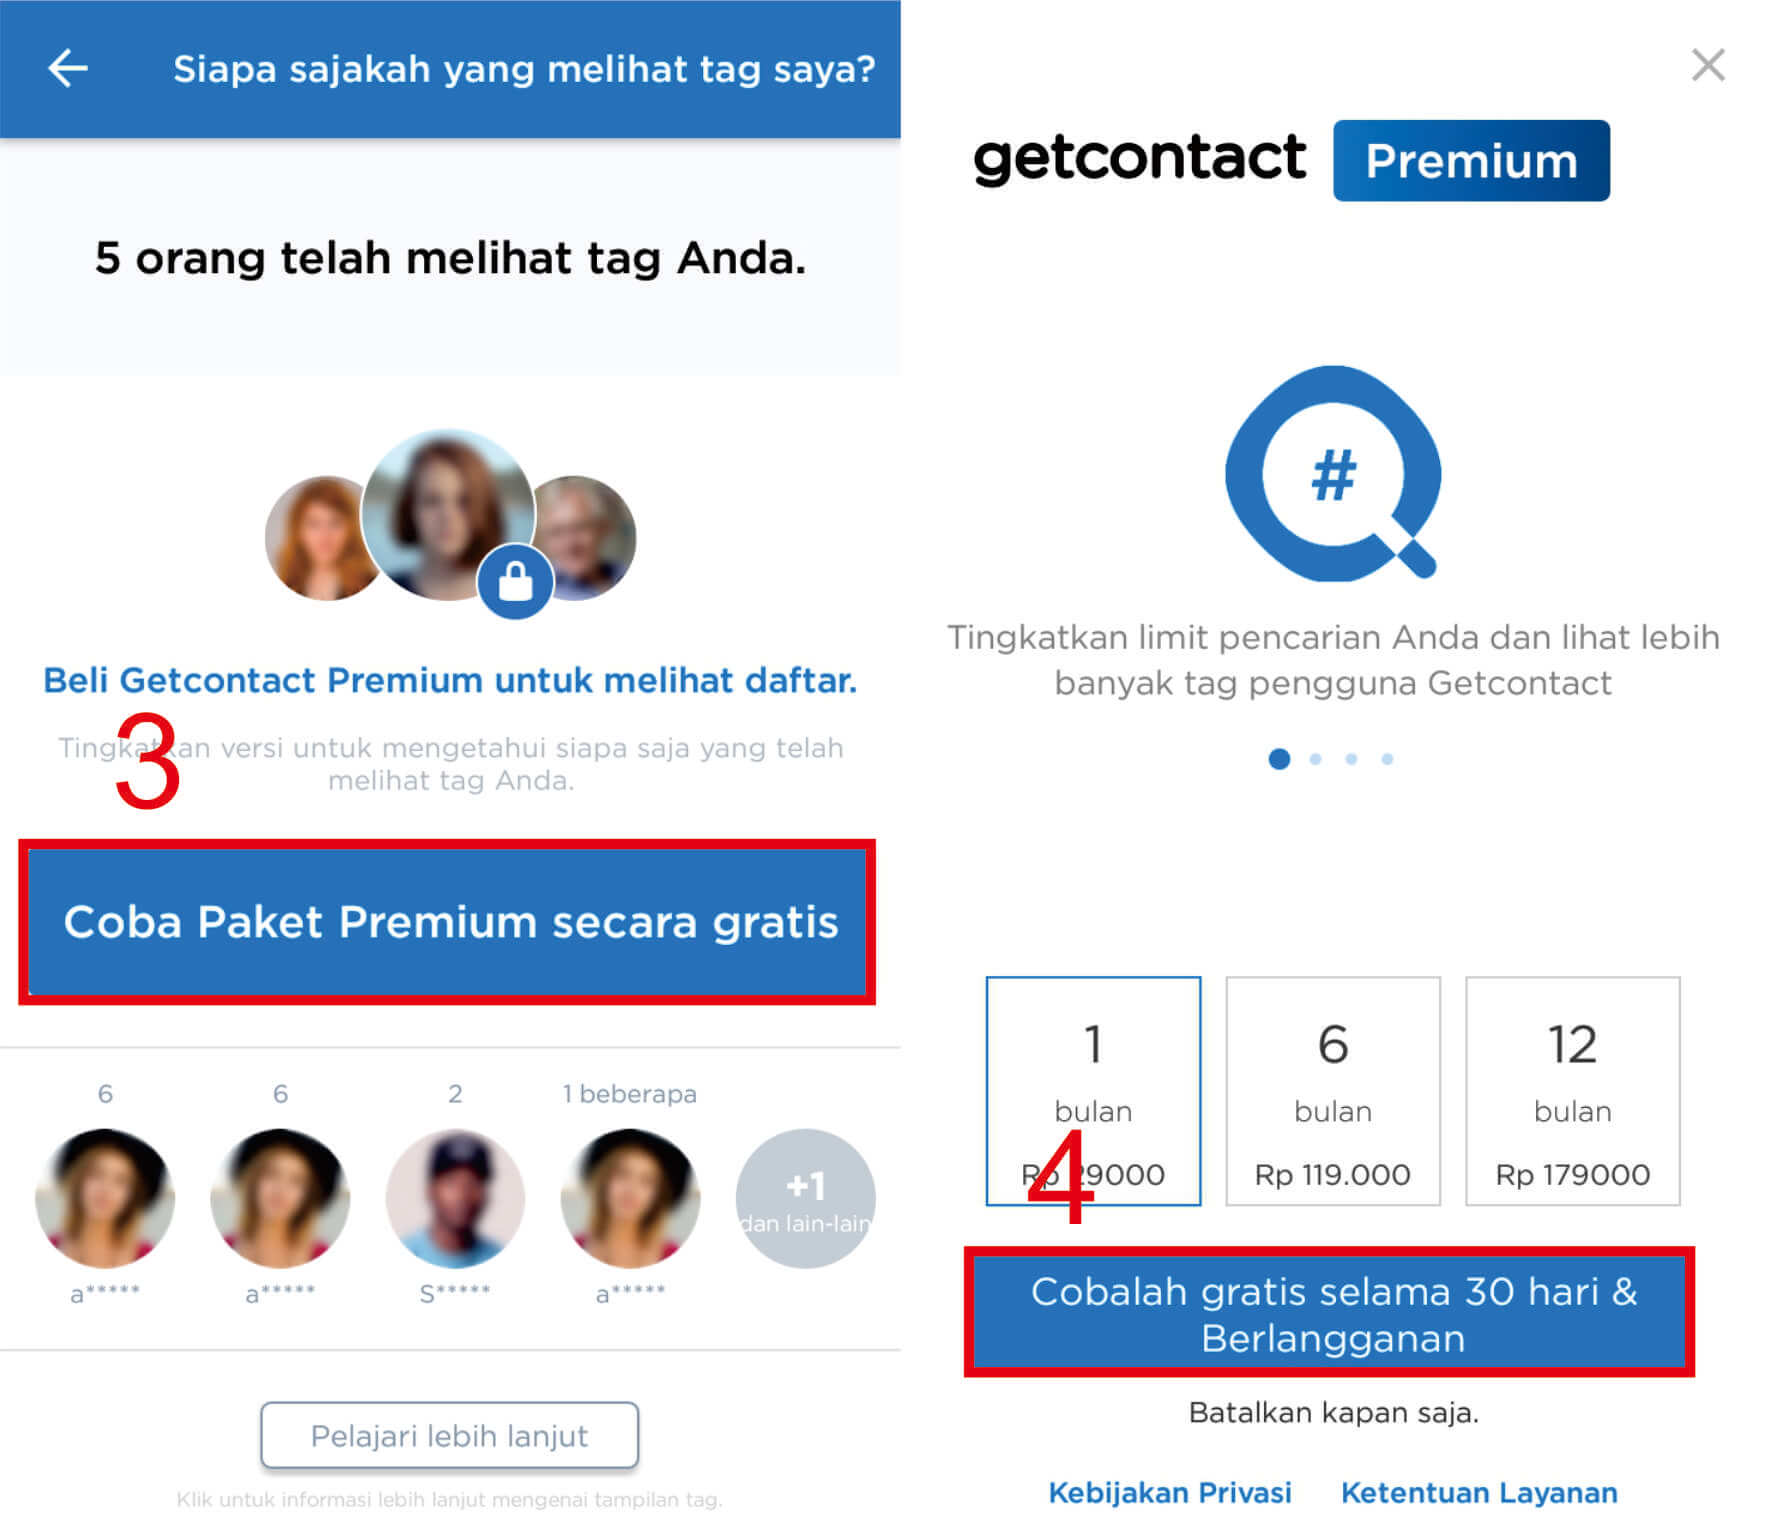 Cara Langganan GetContact Premium